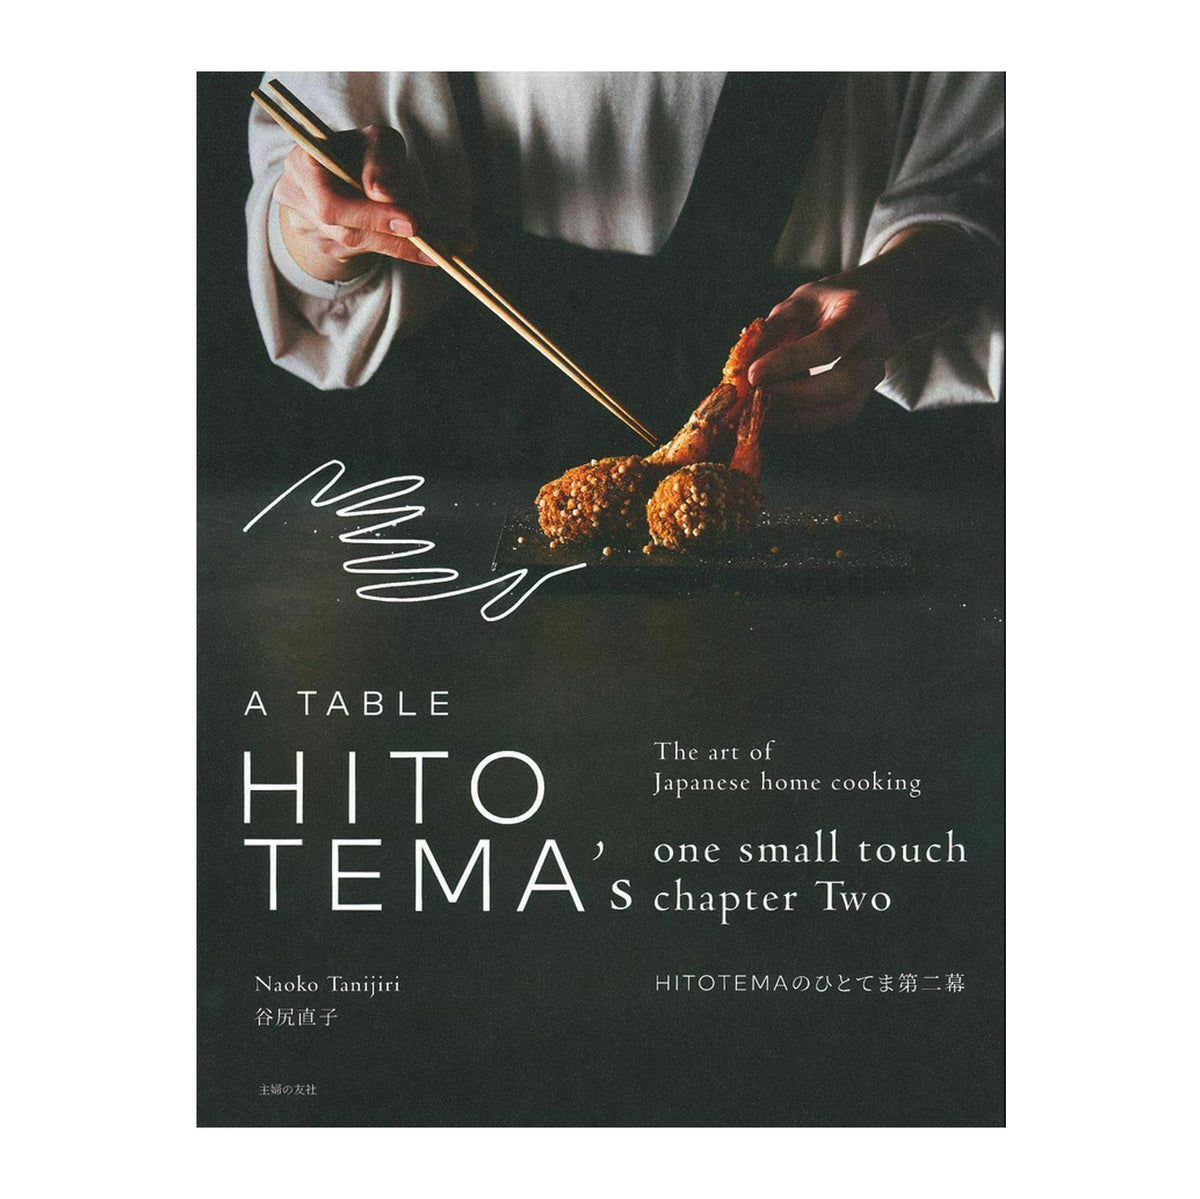 Naoko Tanijiri | The Art of Japanese Home Cooking Vol. II